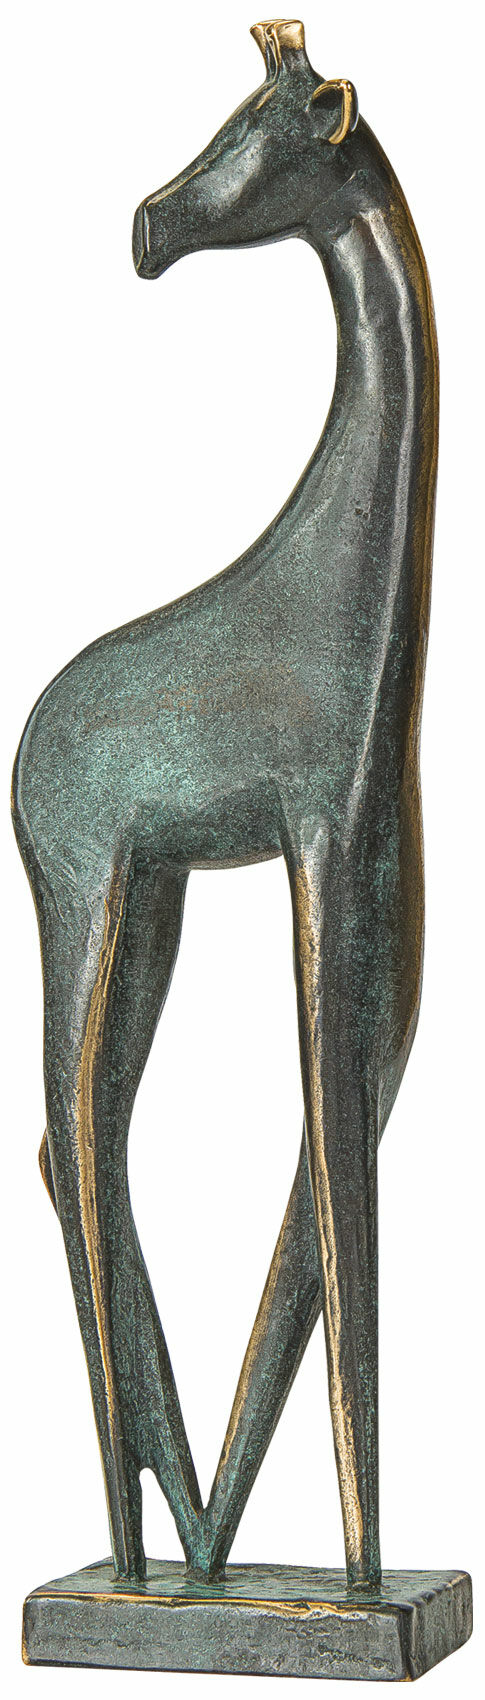 Skulptur "Giraf", bronze von Raimund Schmelter